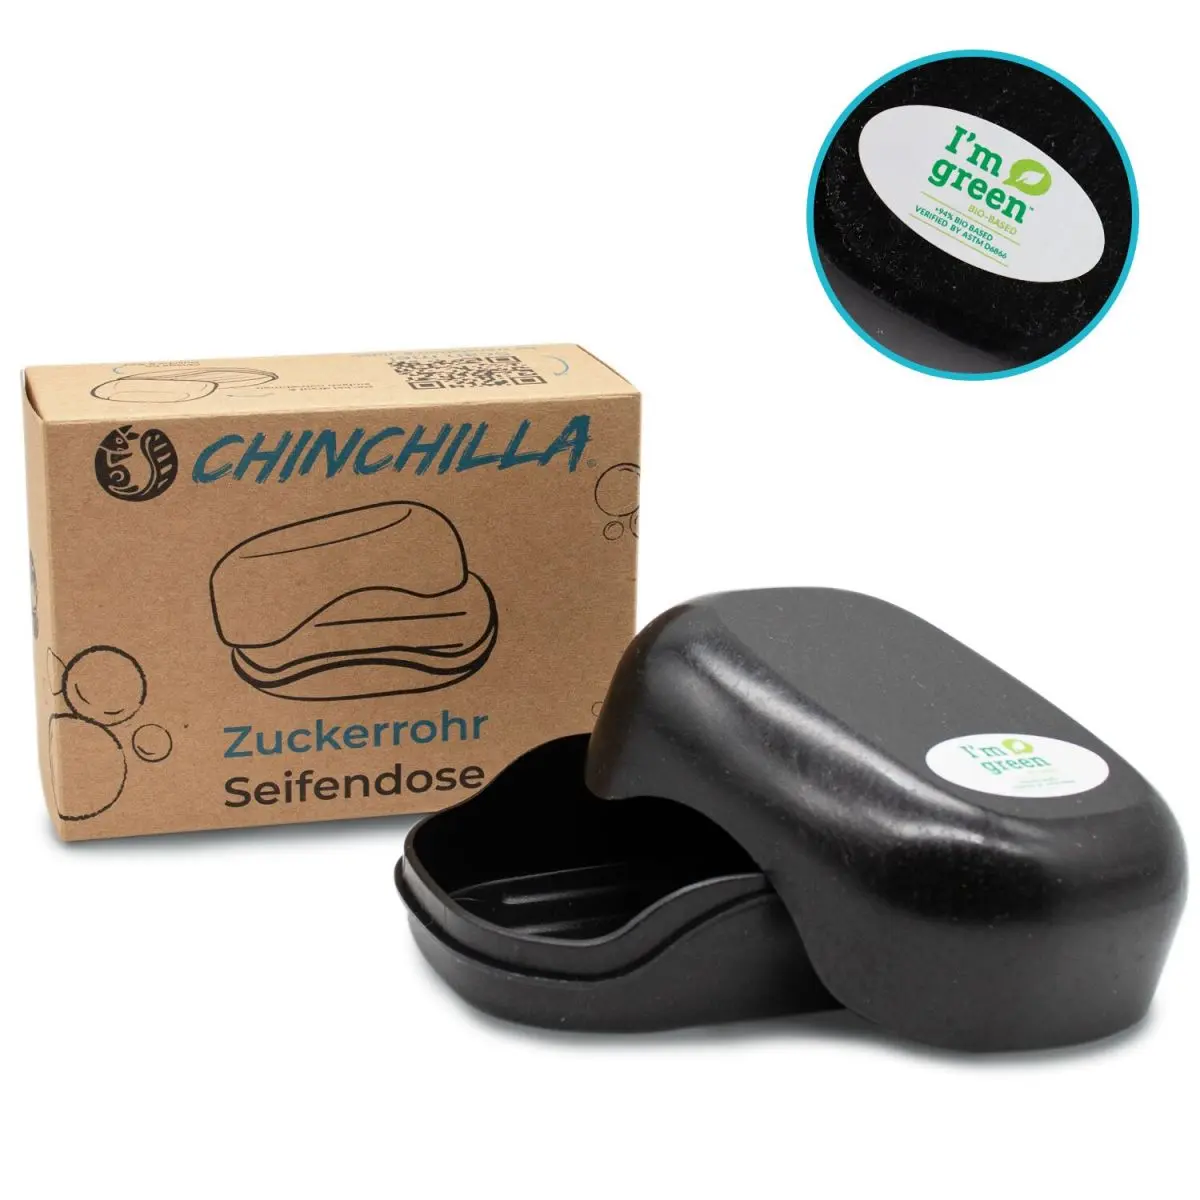 Chinchilla - Seifendose